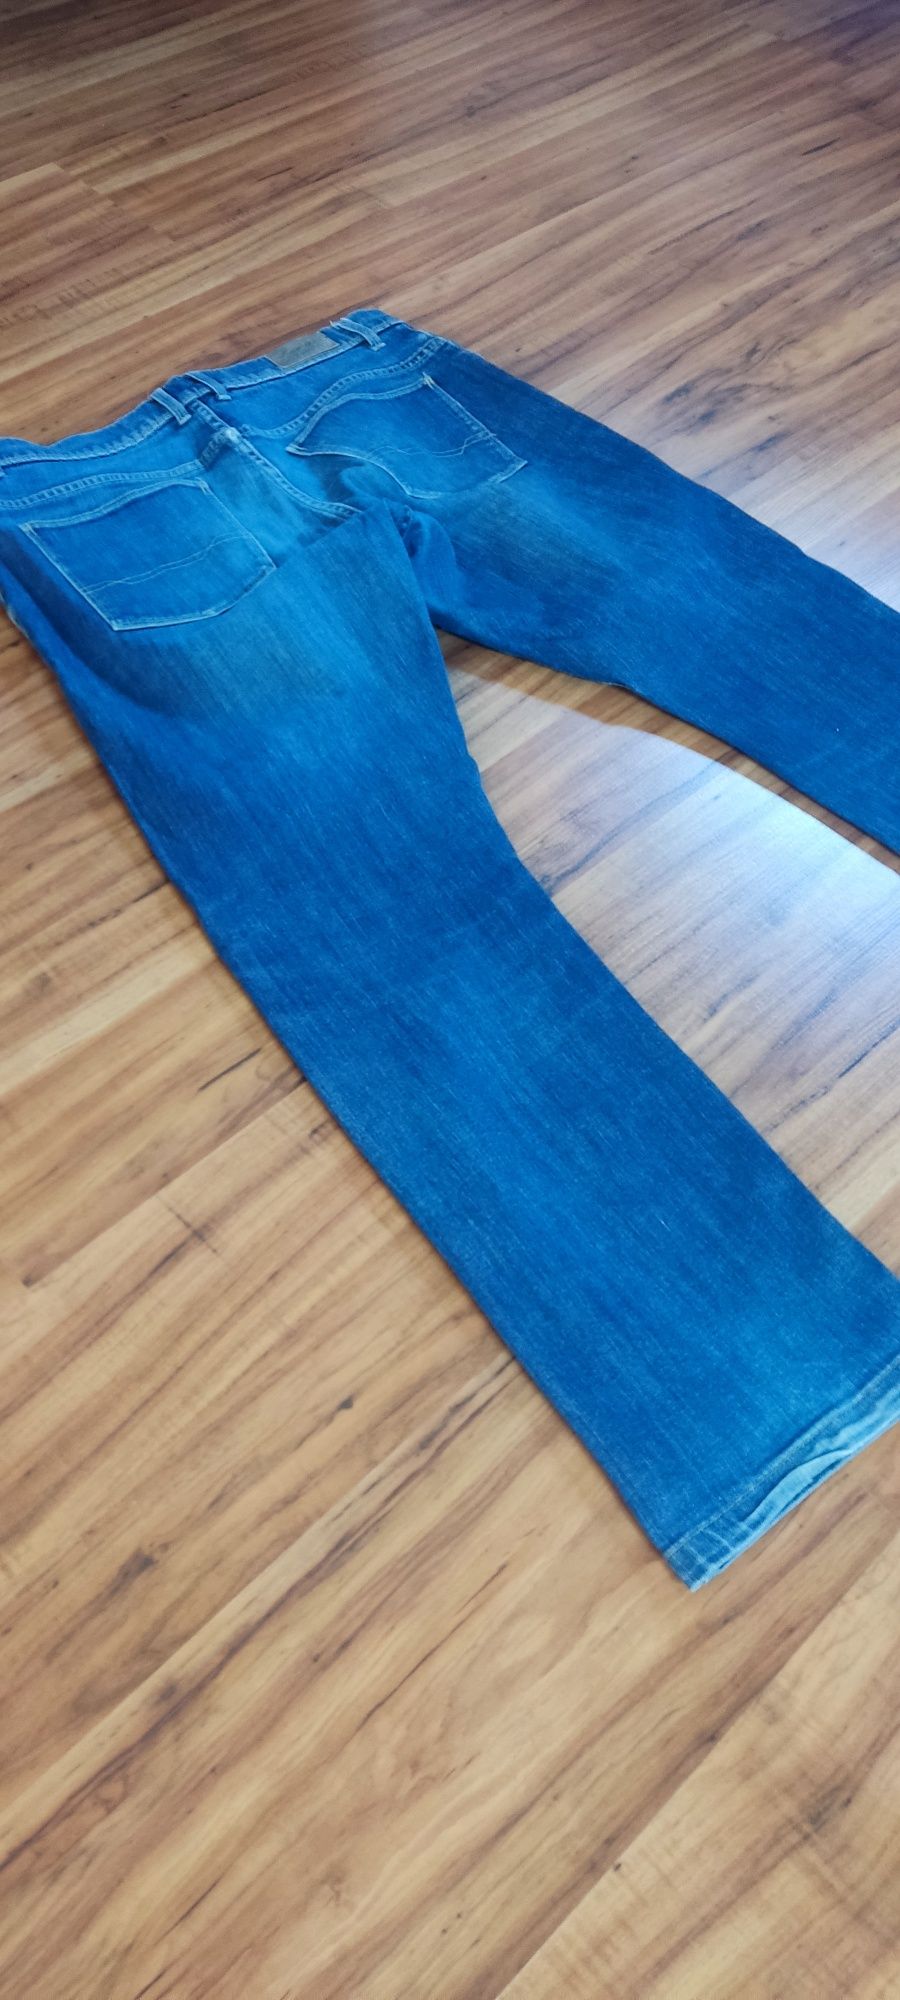 spodnie męsknie jeansowe W 32 L 30